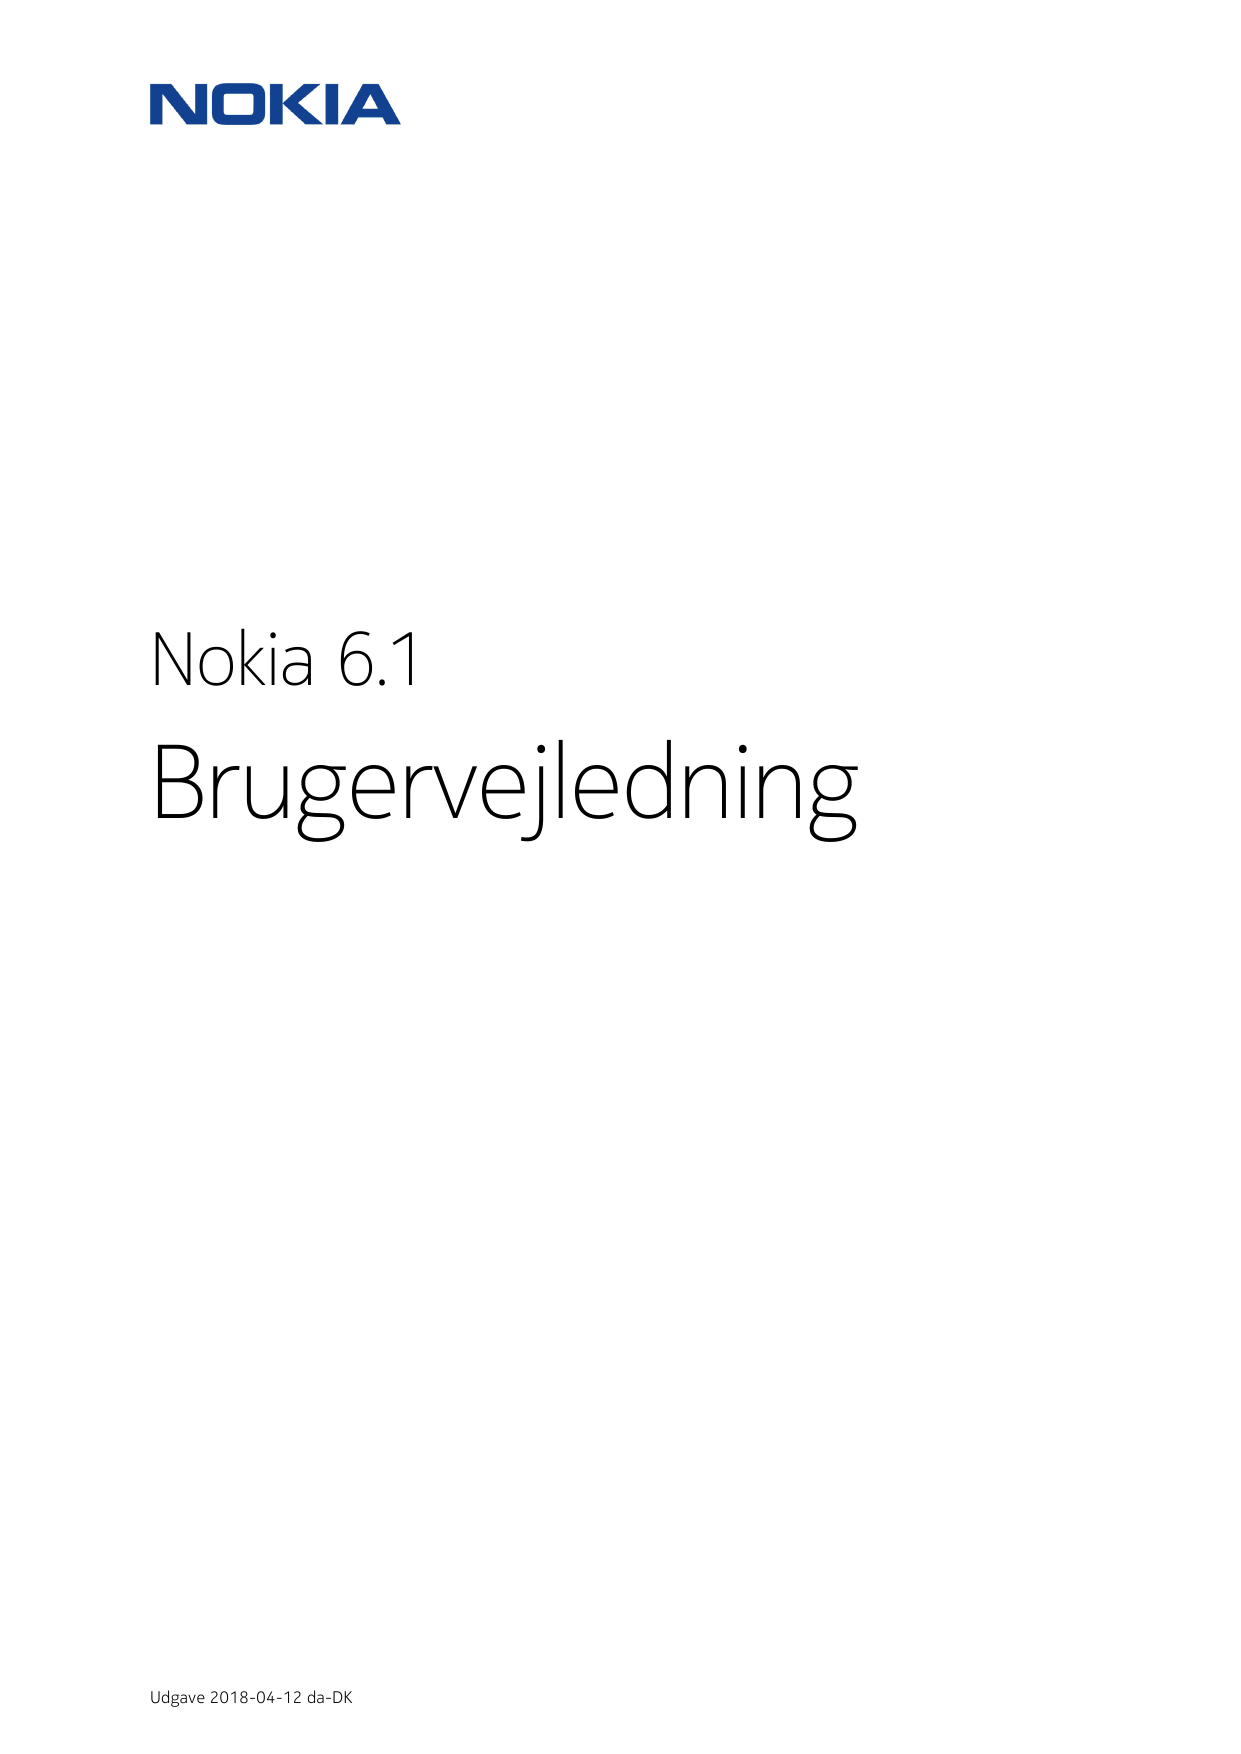 Nokia 6.1BrugervejledningUdgave 2018-04-12 da-DK